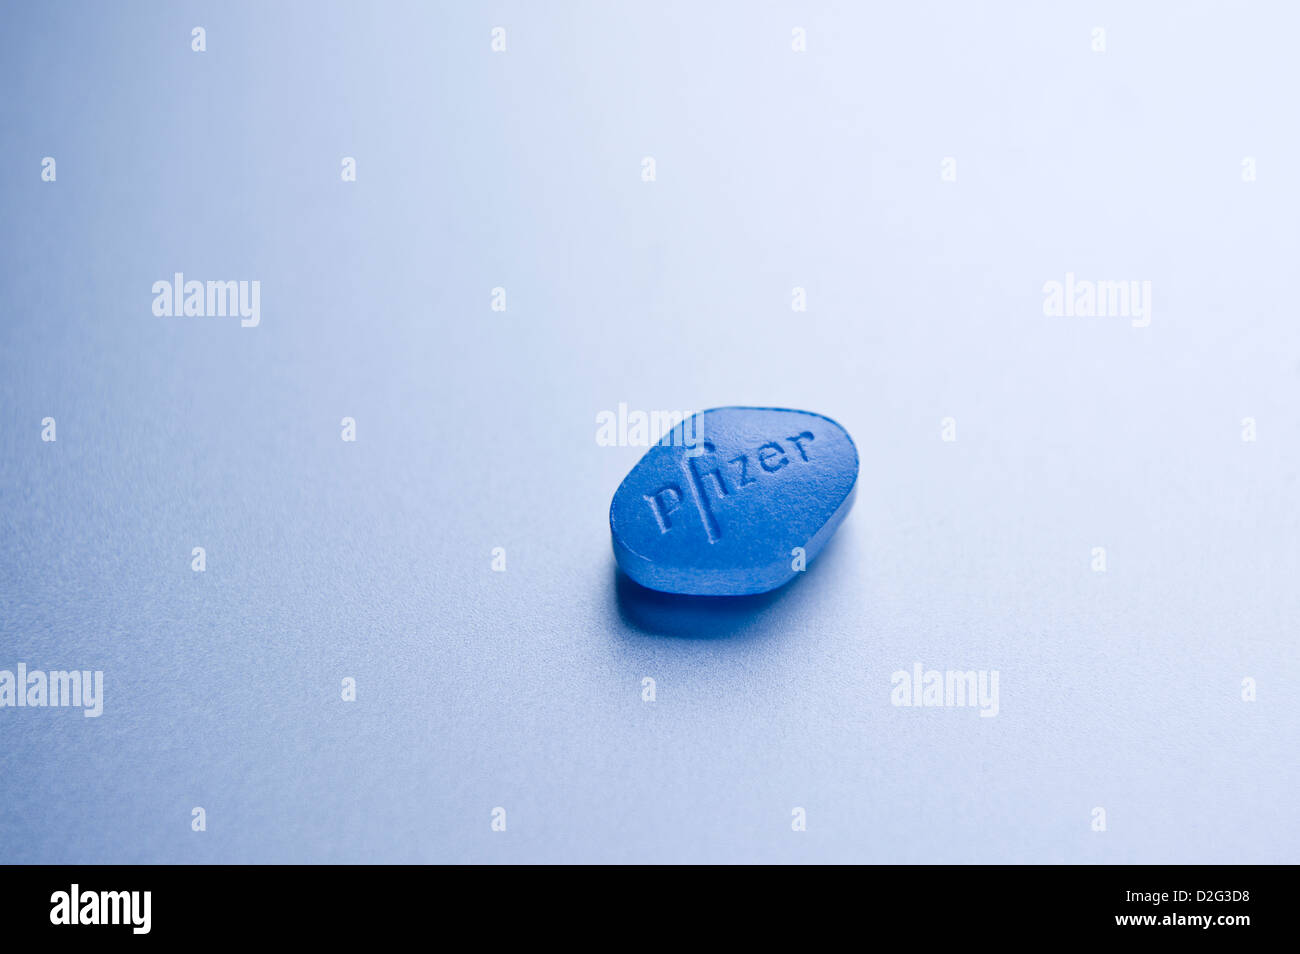 Cerrar detalle de 100 mg de Sildenafil Citrate Pfizer viagra píldora sobre fondo plateado Foto de stock